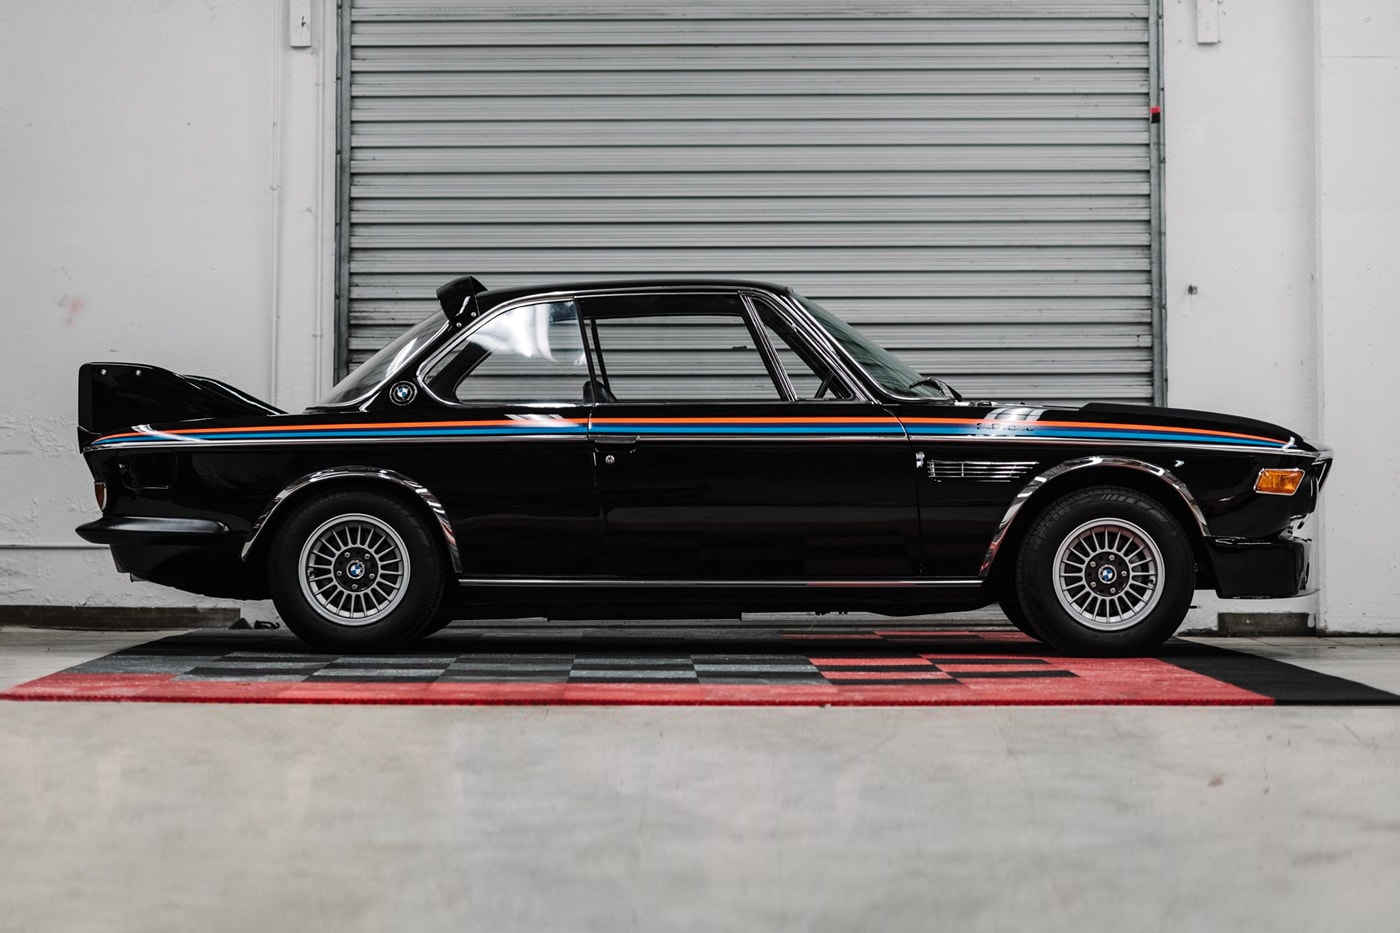 1972 BMW 3.0 CSL RM Sotheby's Auction  For sale buy now bid black retrofuturistic motorsport automotive car e9 e24 